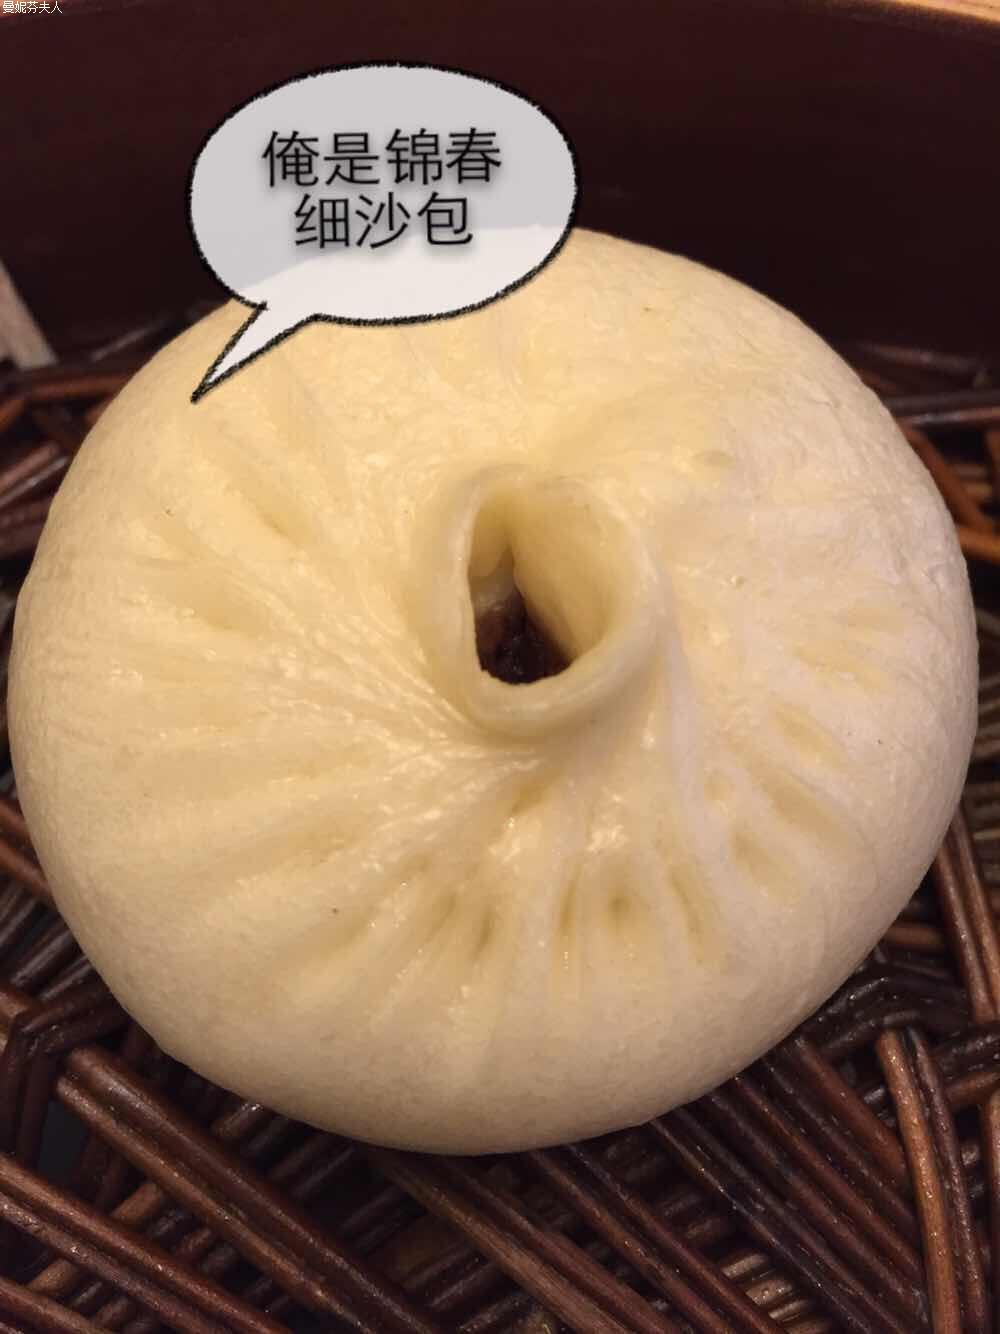 新货扬州锦春 包子 豆沙包 6只 非速冻 点心 特产 早餐 方便速食